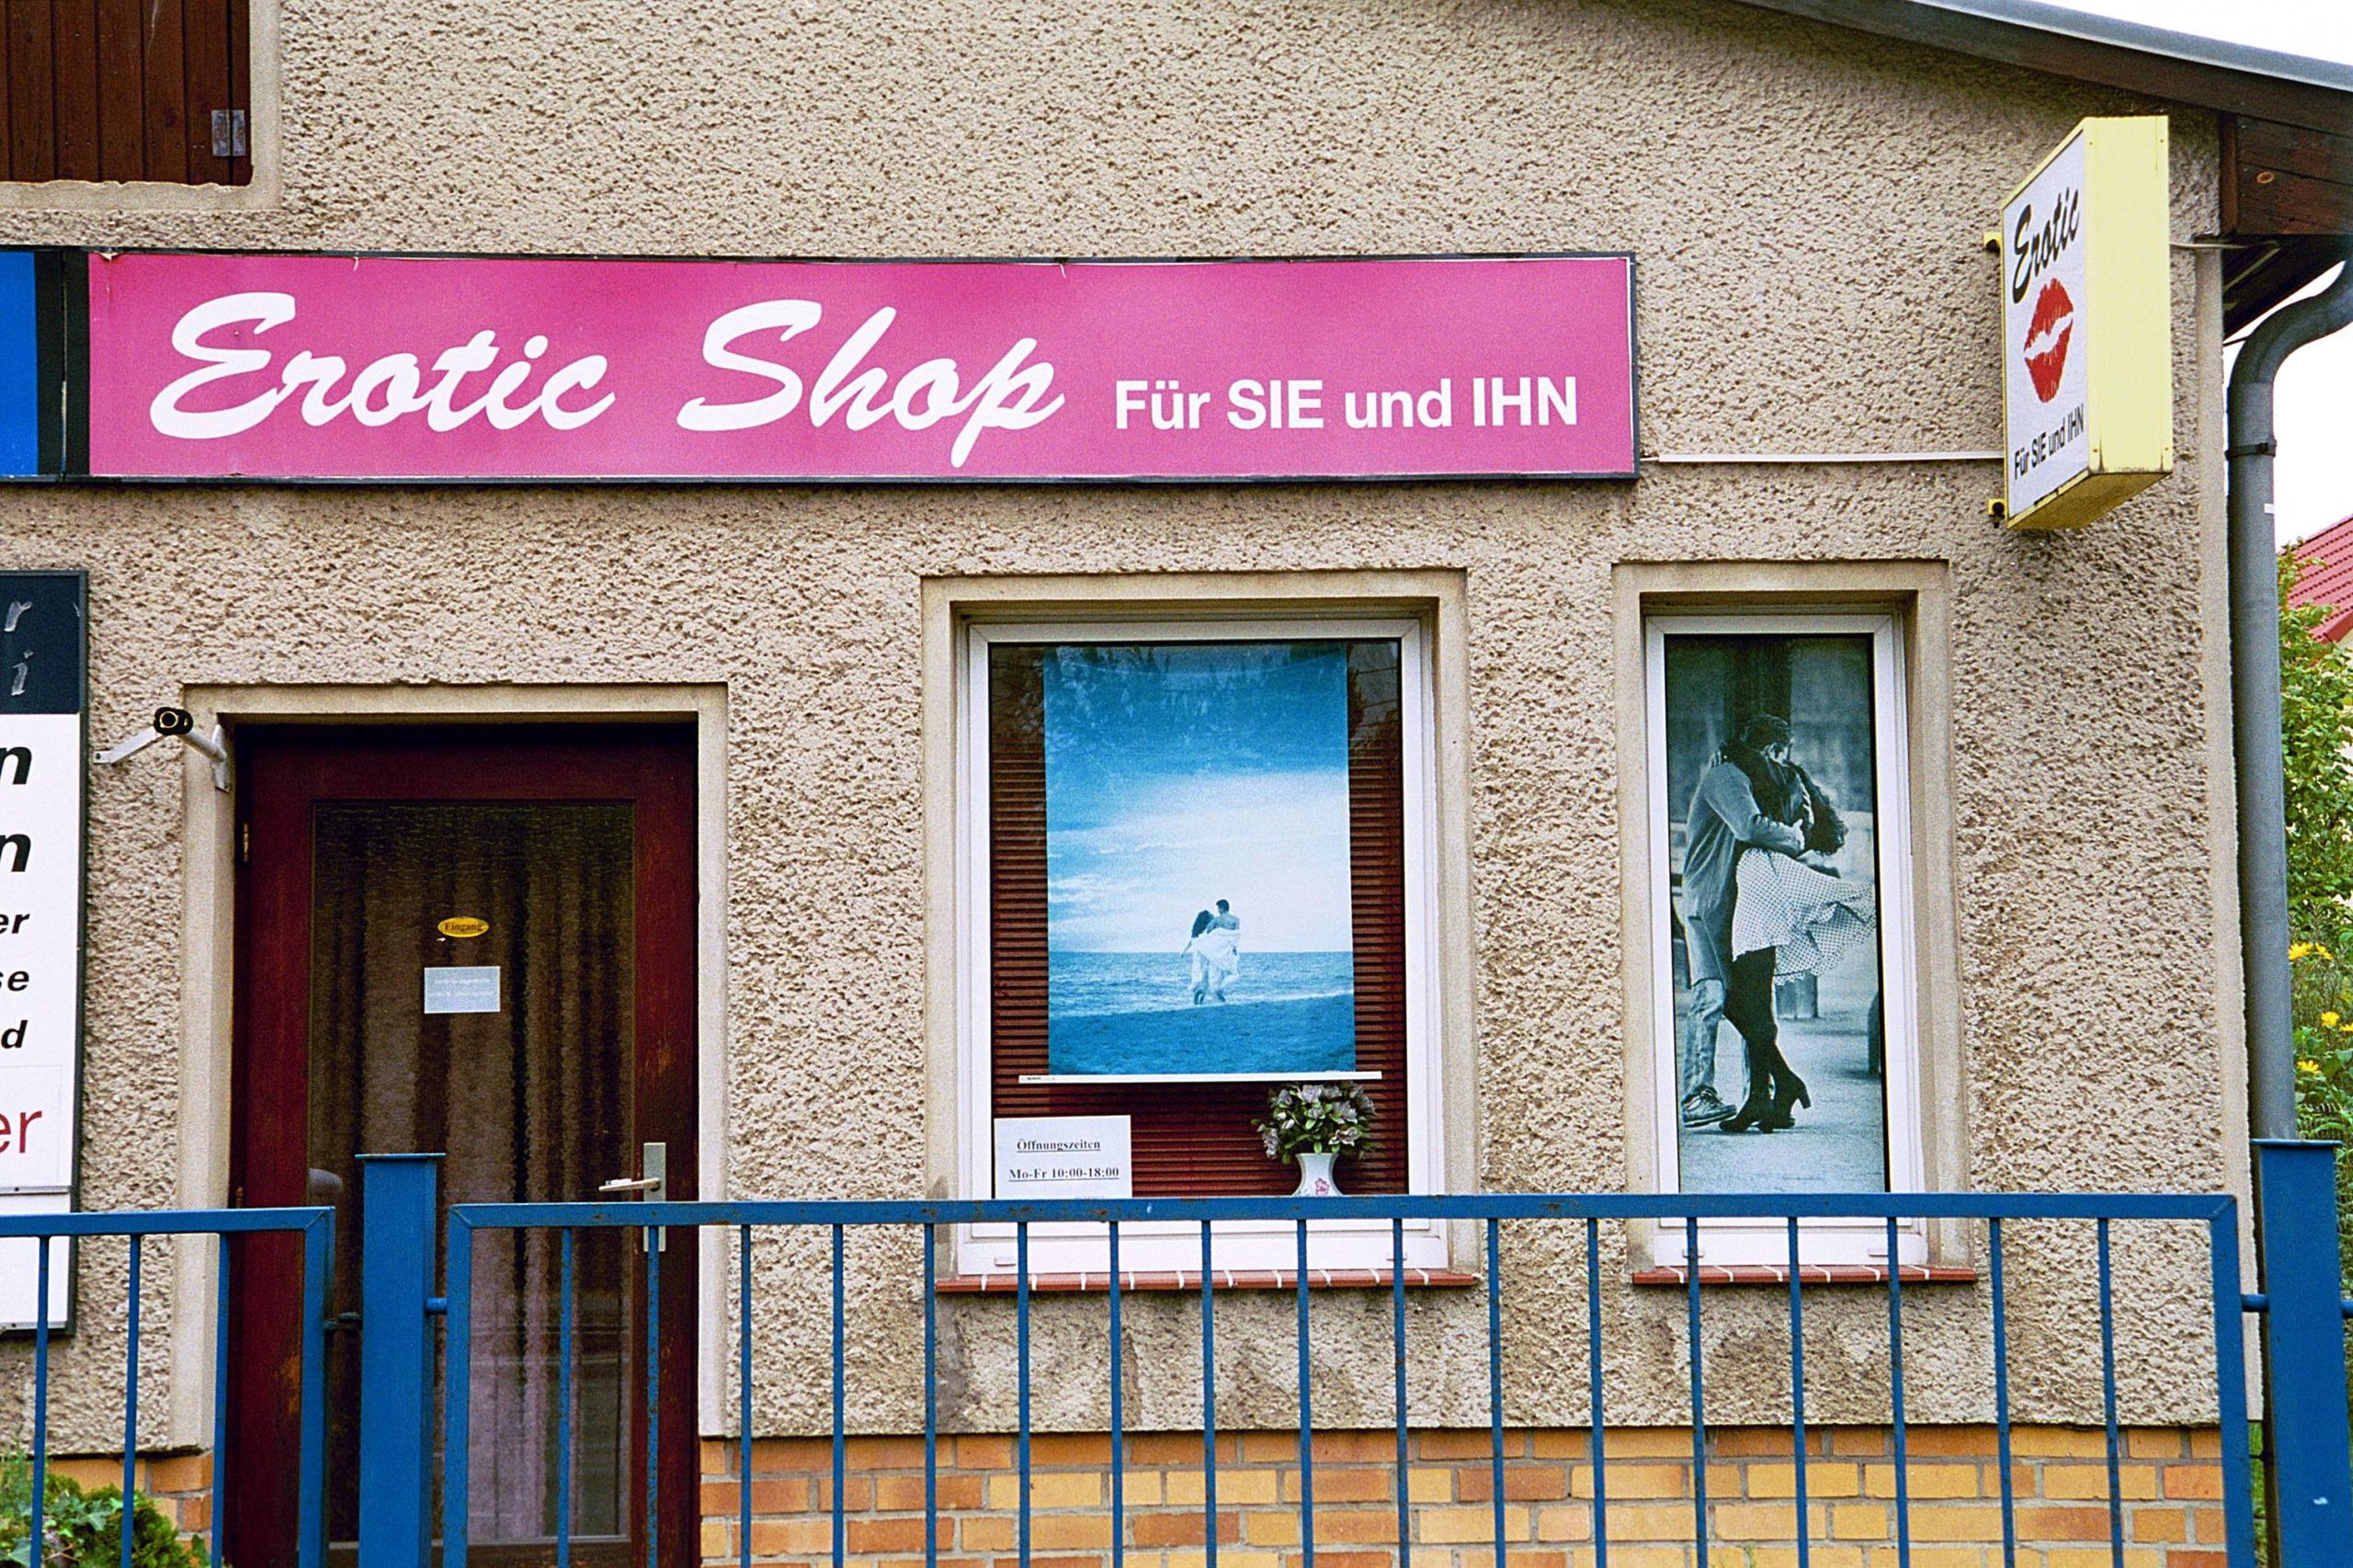 Erotic Shop für SIE und IHN in Marzahn.